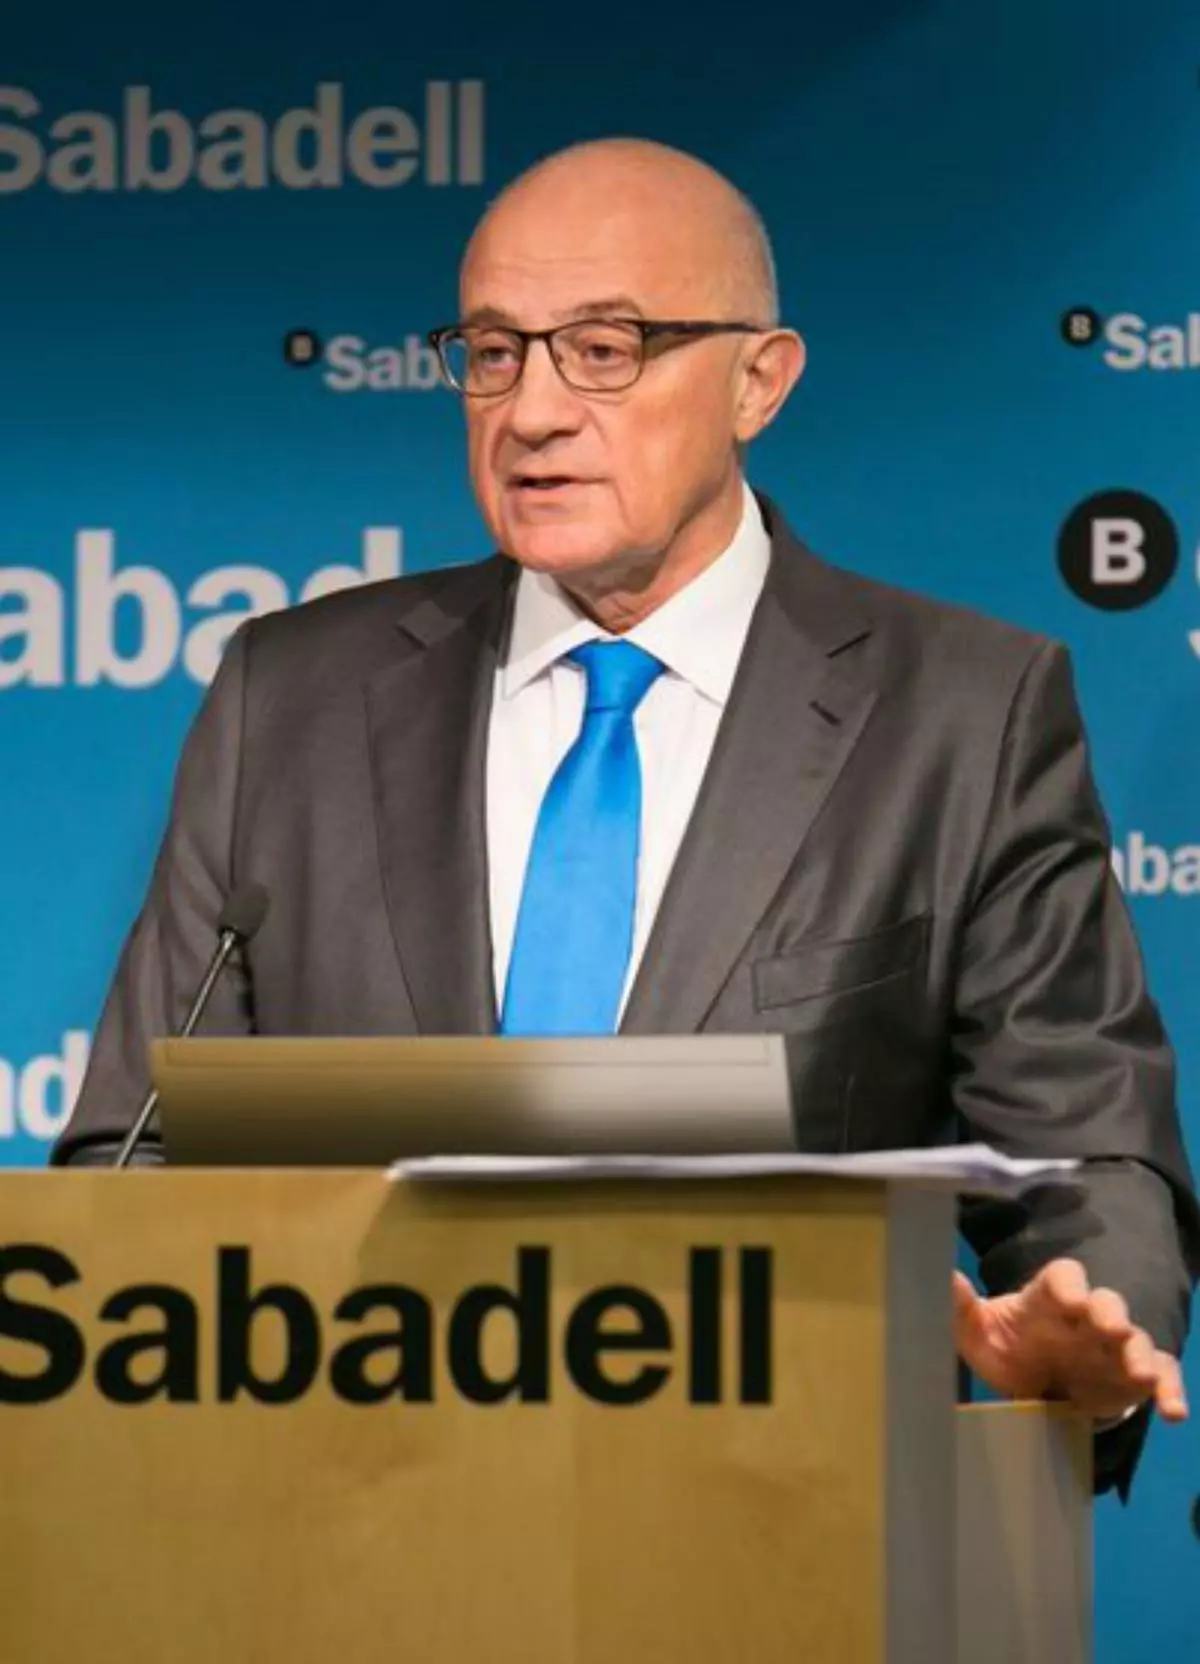 Sabadell pide a BBVA información "clara, completa y transparente" sobre la opa